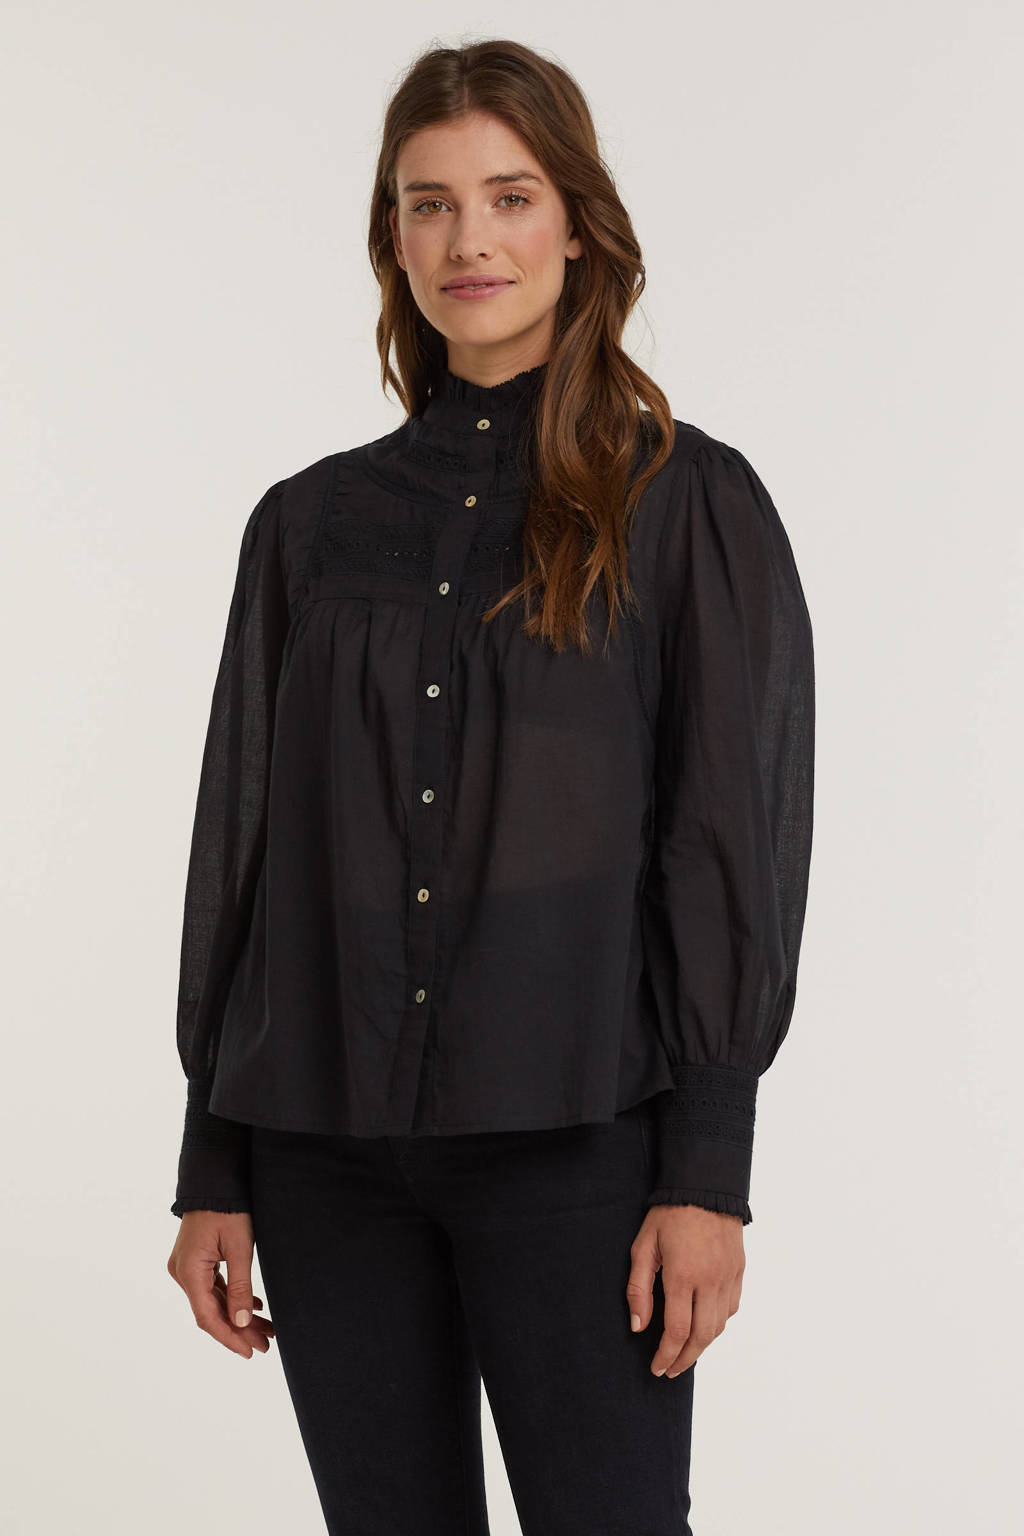 Zwarte dames Aaiko blouse van katoen met lange mouwen, mao kraag, knoopsluiting en broderie